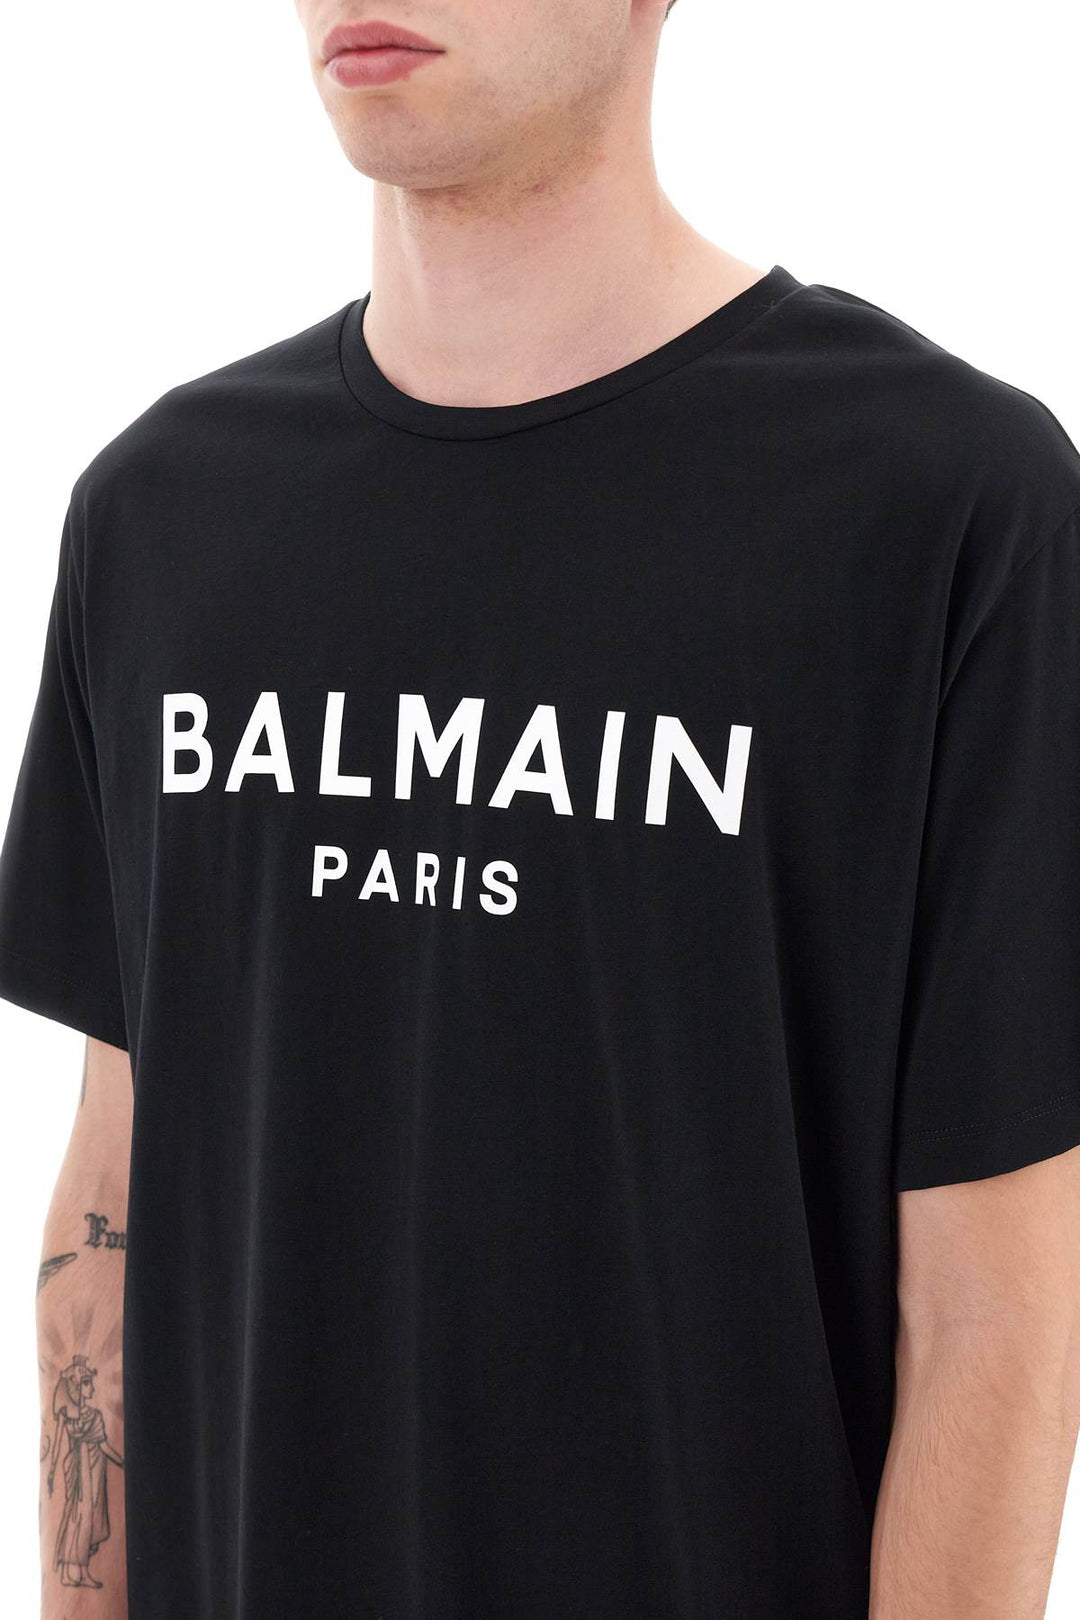 Balmain Logo Print T Shirt   Black